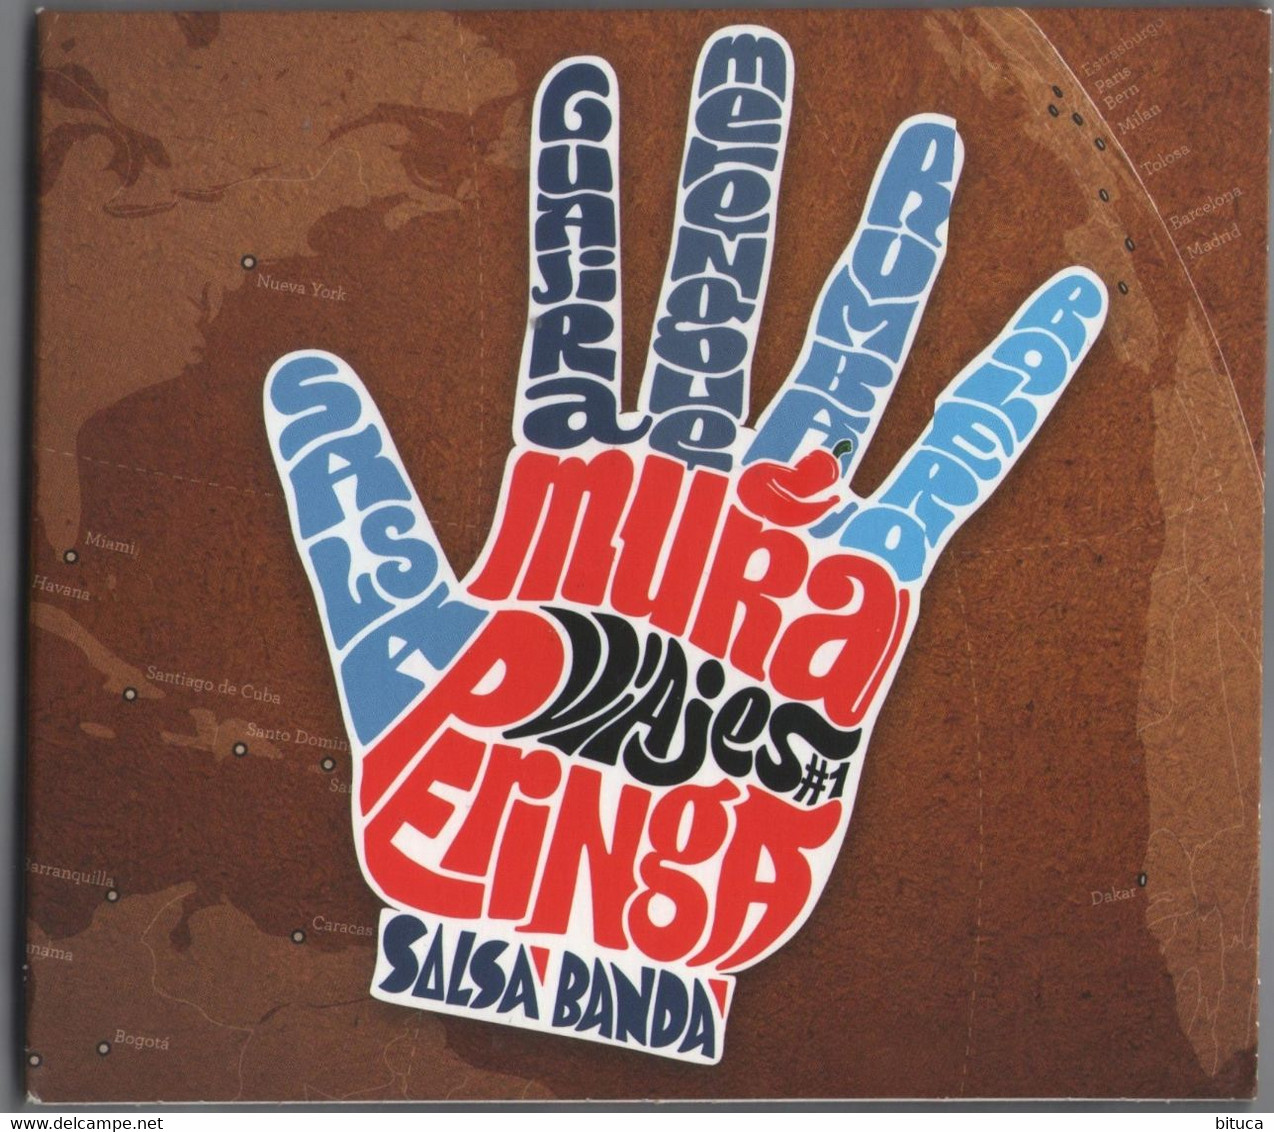 CD 8 TITRES MURA PERINGA DIGIPACK TRèS BON éTAT & RARE - Wereldmuziek